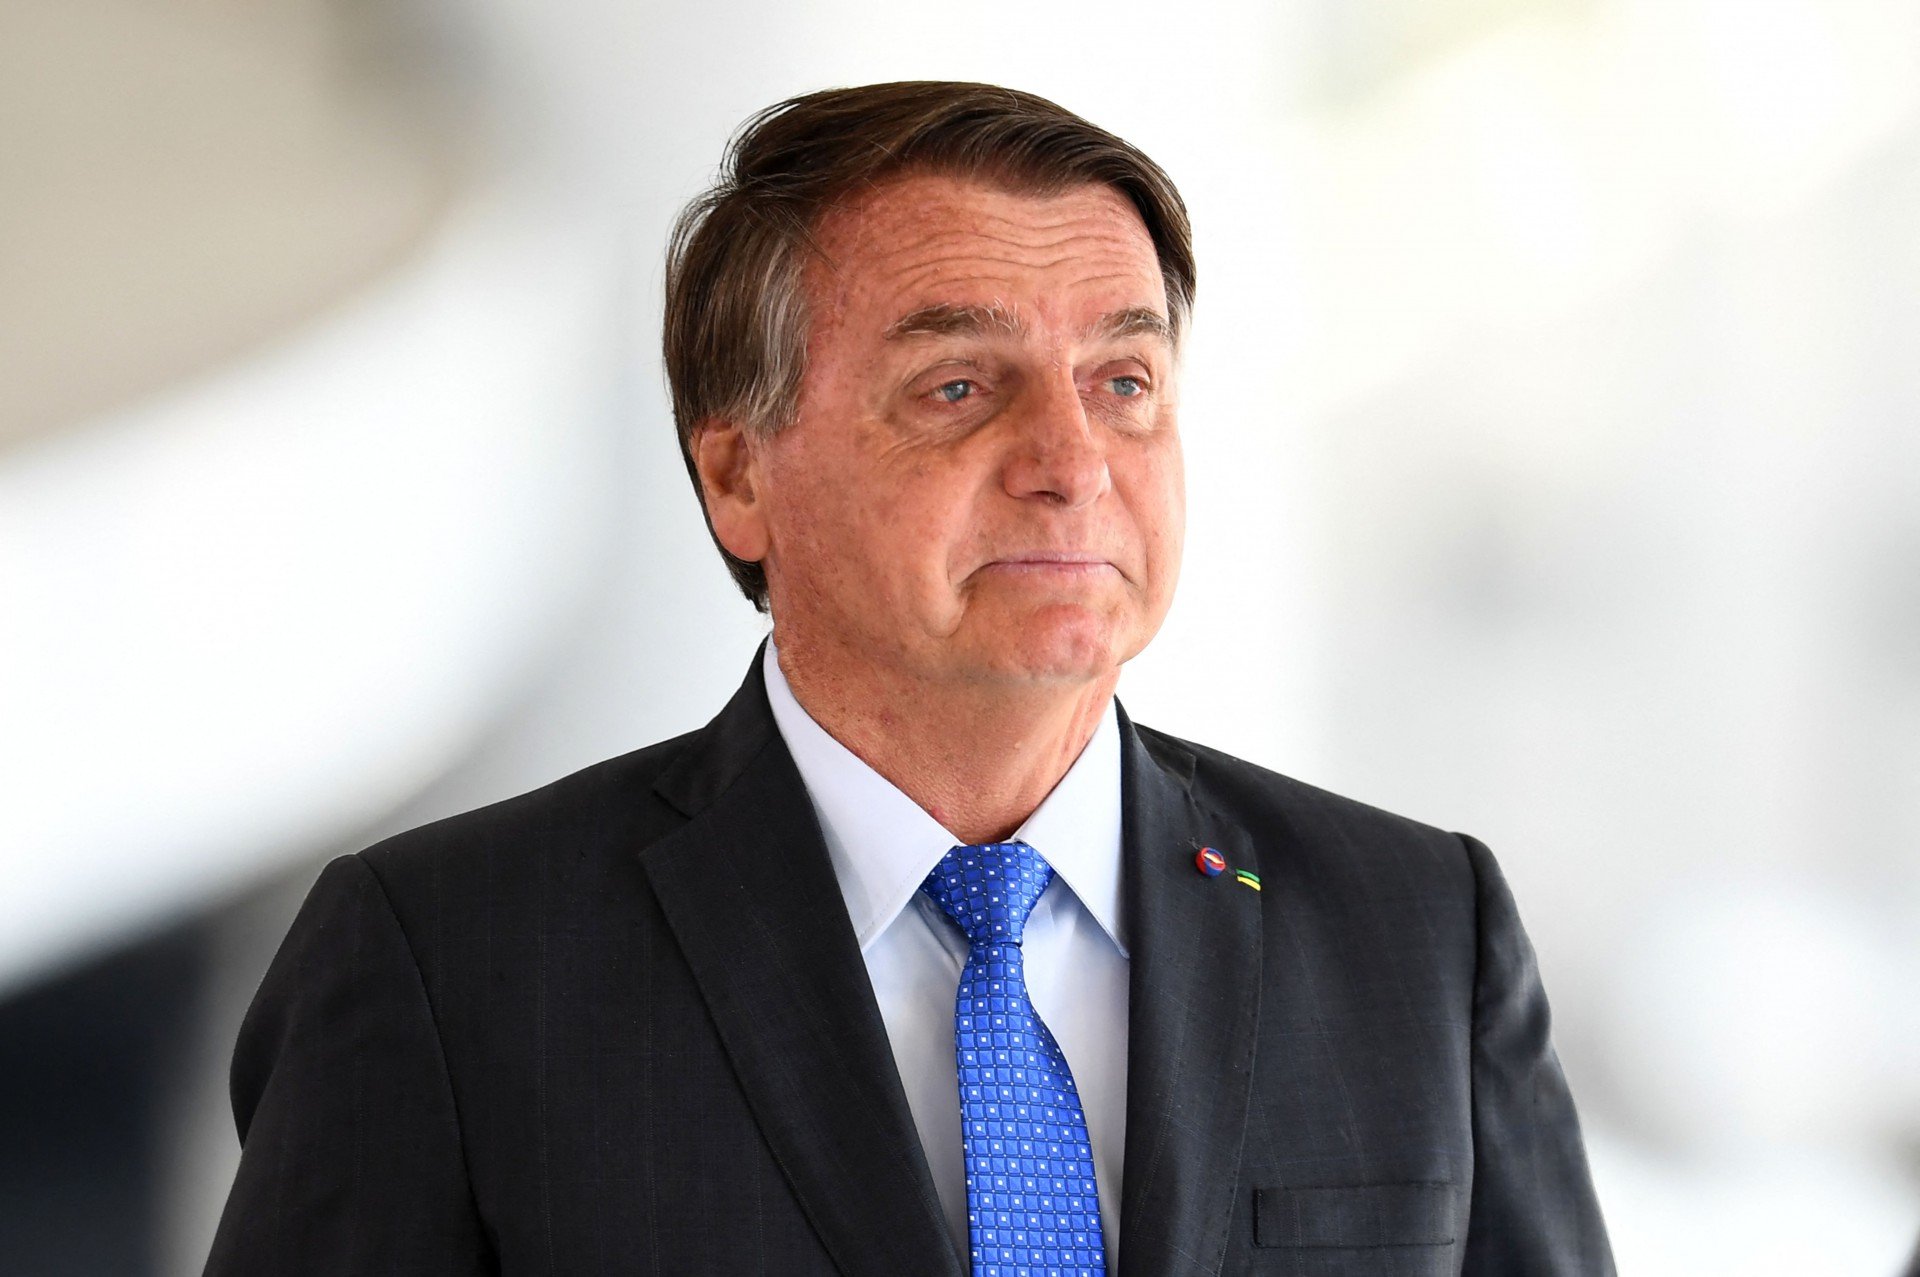 Em conversa com apoiadores, Bolsonaro mantém discurso de confronto e ataques